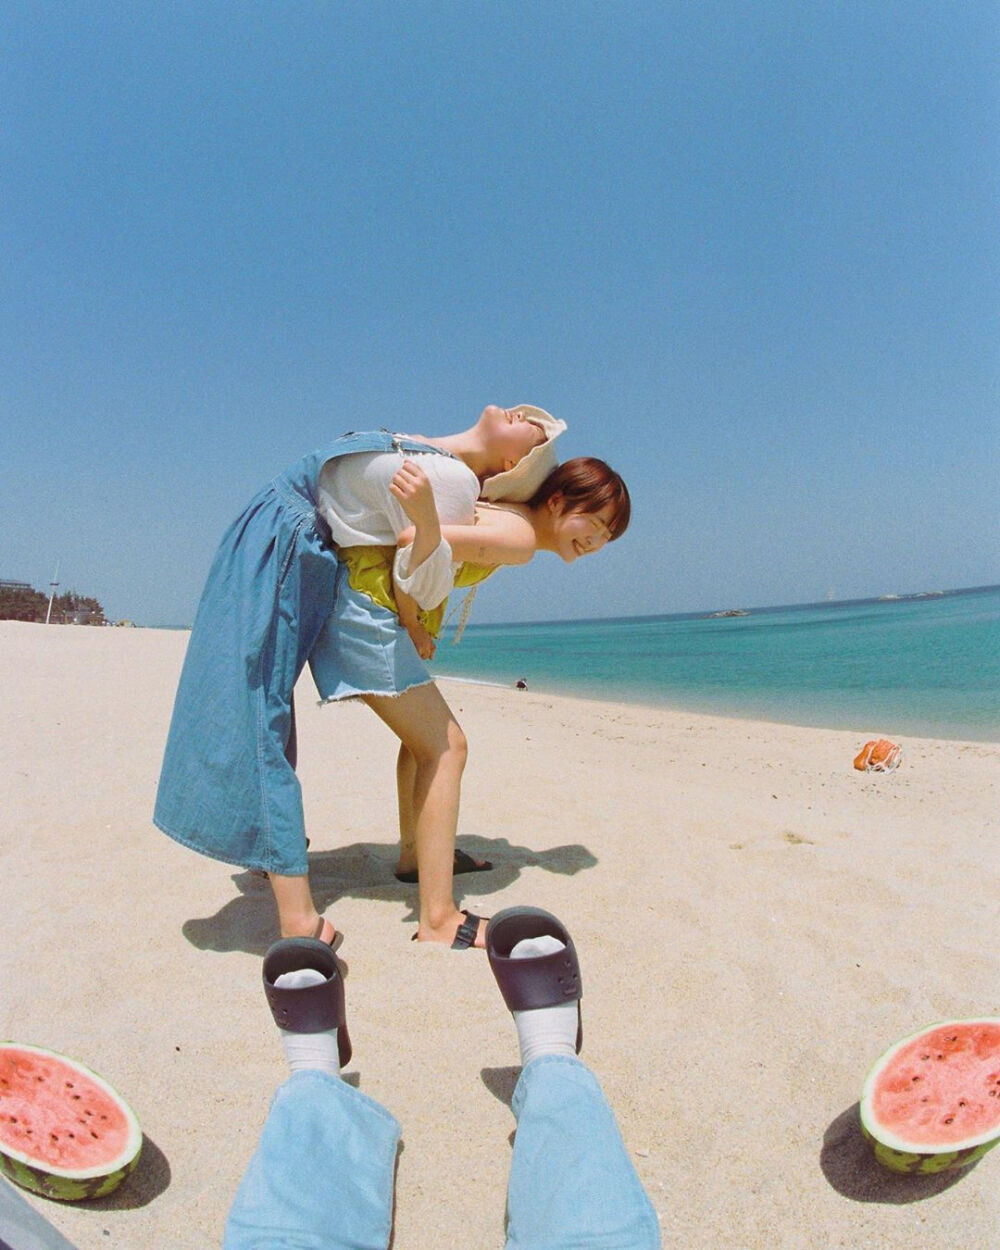 夏日海边闺蜜写真集♡
和西瓜一起拍照
韩国摄影师作品
IG:pit_4_pat